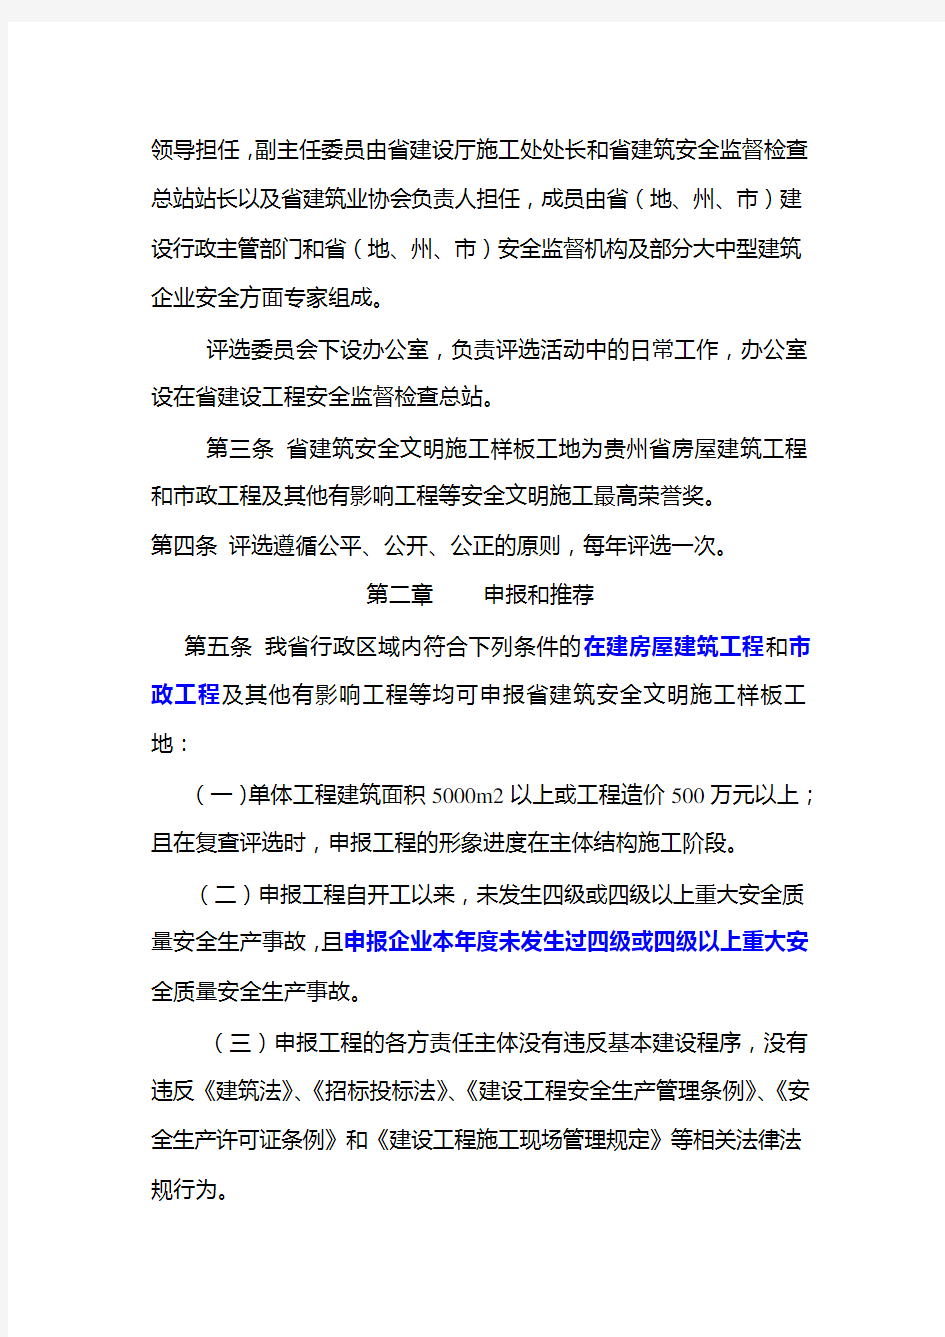 贵州省建筑_安全文明施工样板工地评选办法黔建施通2007(146)号